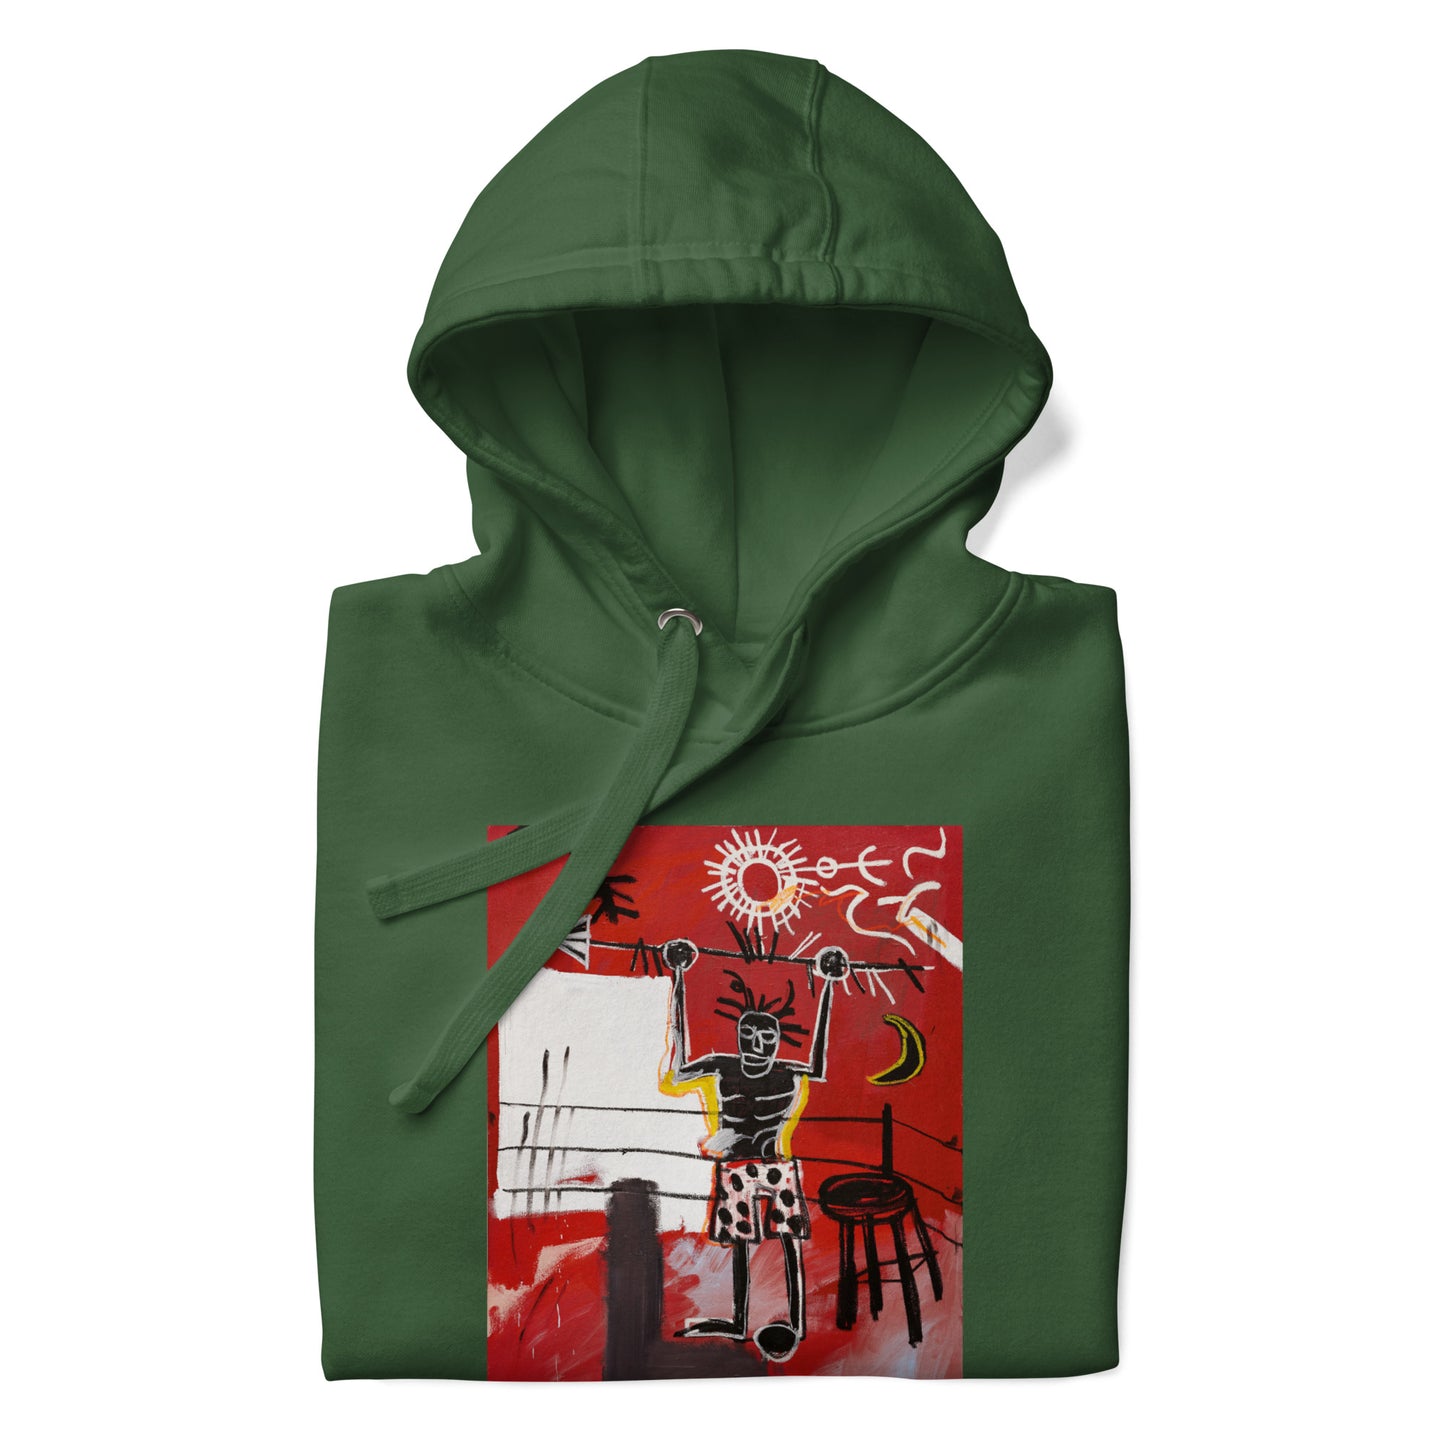 Jean-Michel Basquiat "The Ring" Artwork Printed Premium Streetwear Sweatshirt Hoodie Forest Green